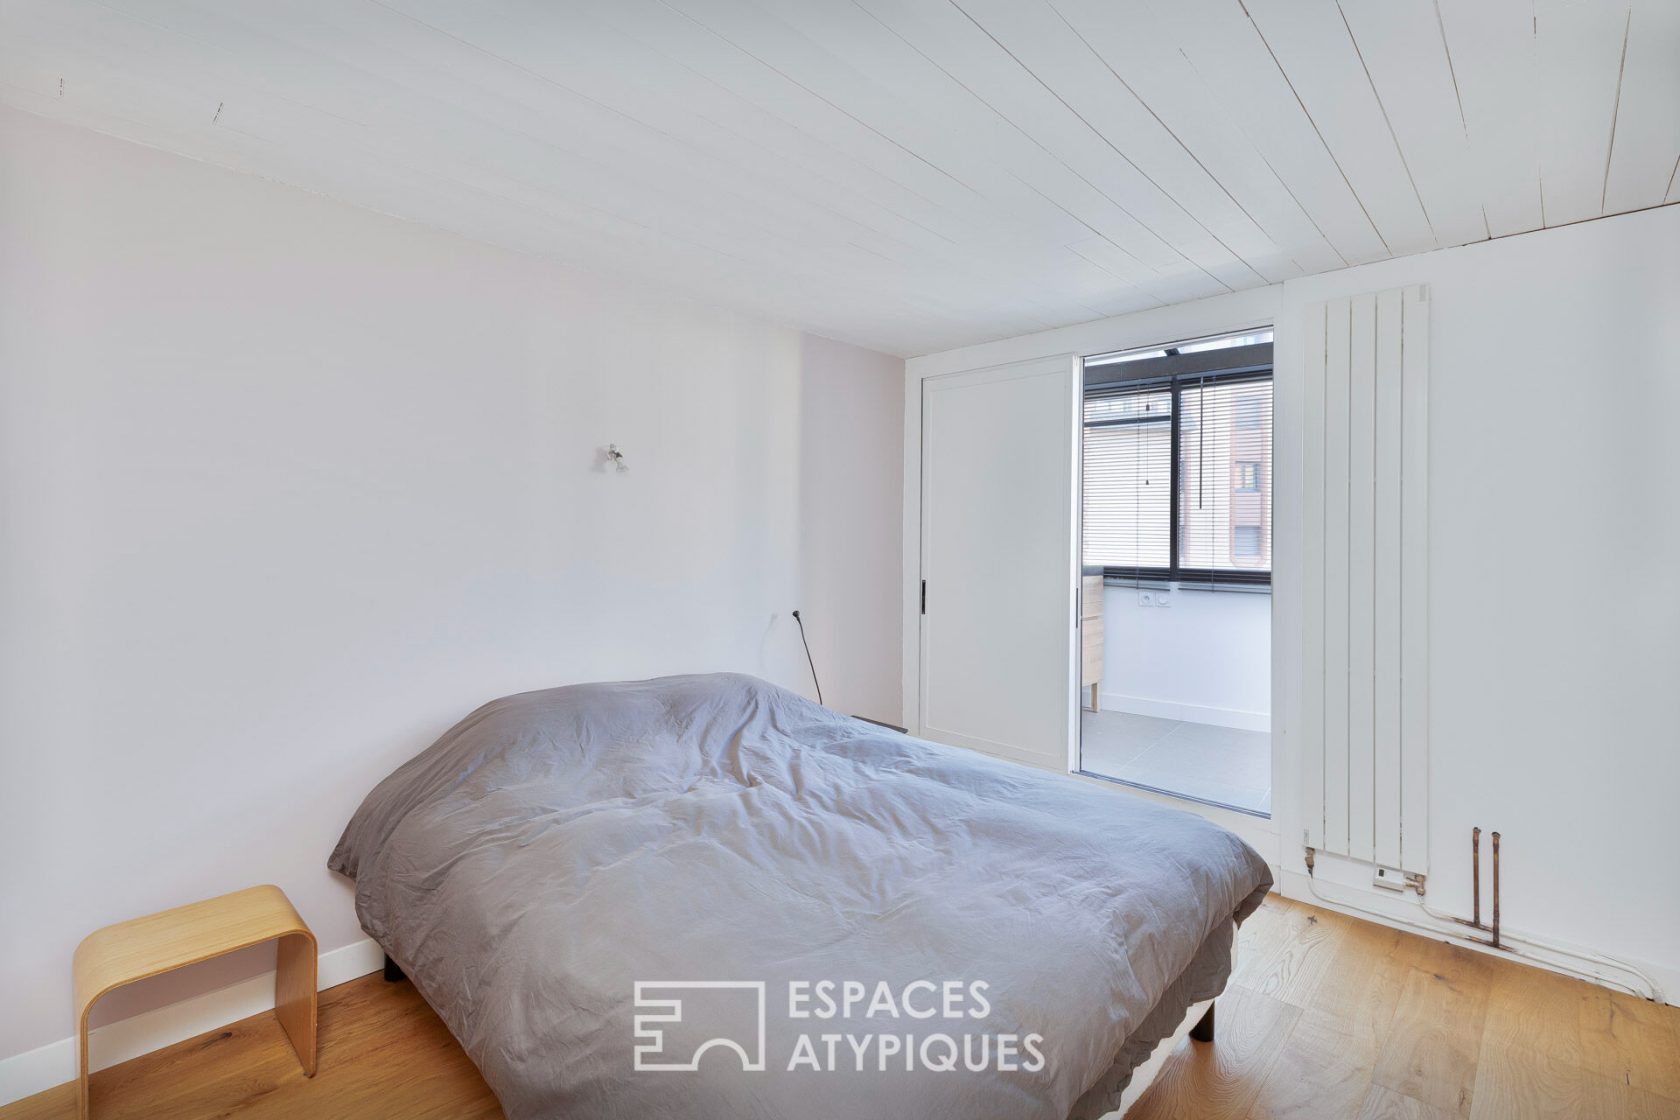 Appartement en duplex avec terrasse au centre de Toulouse